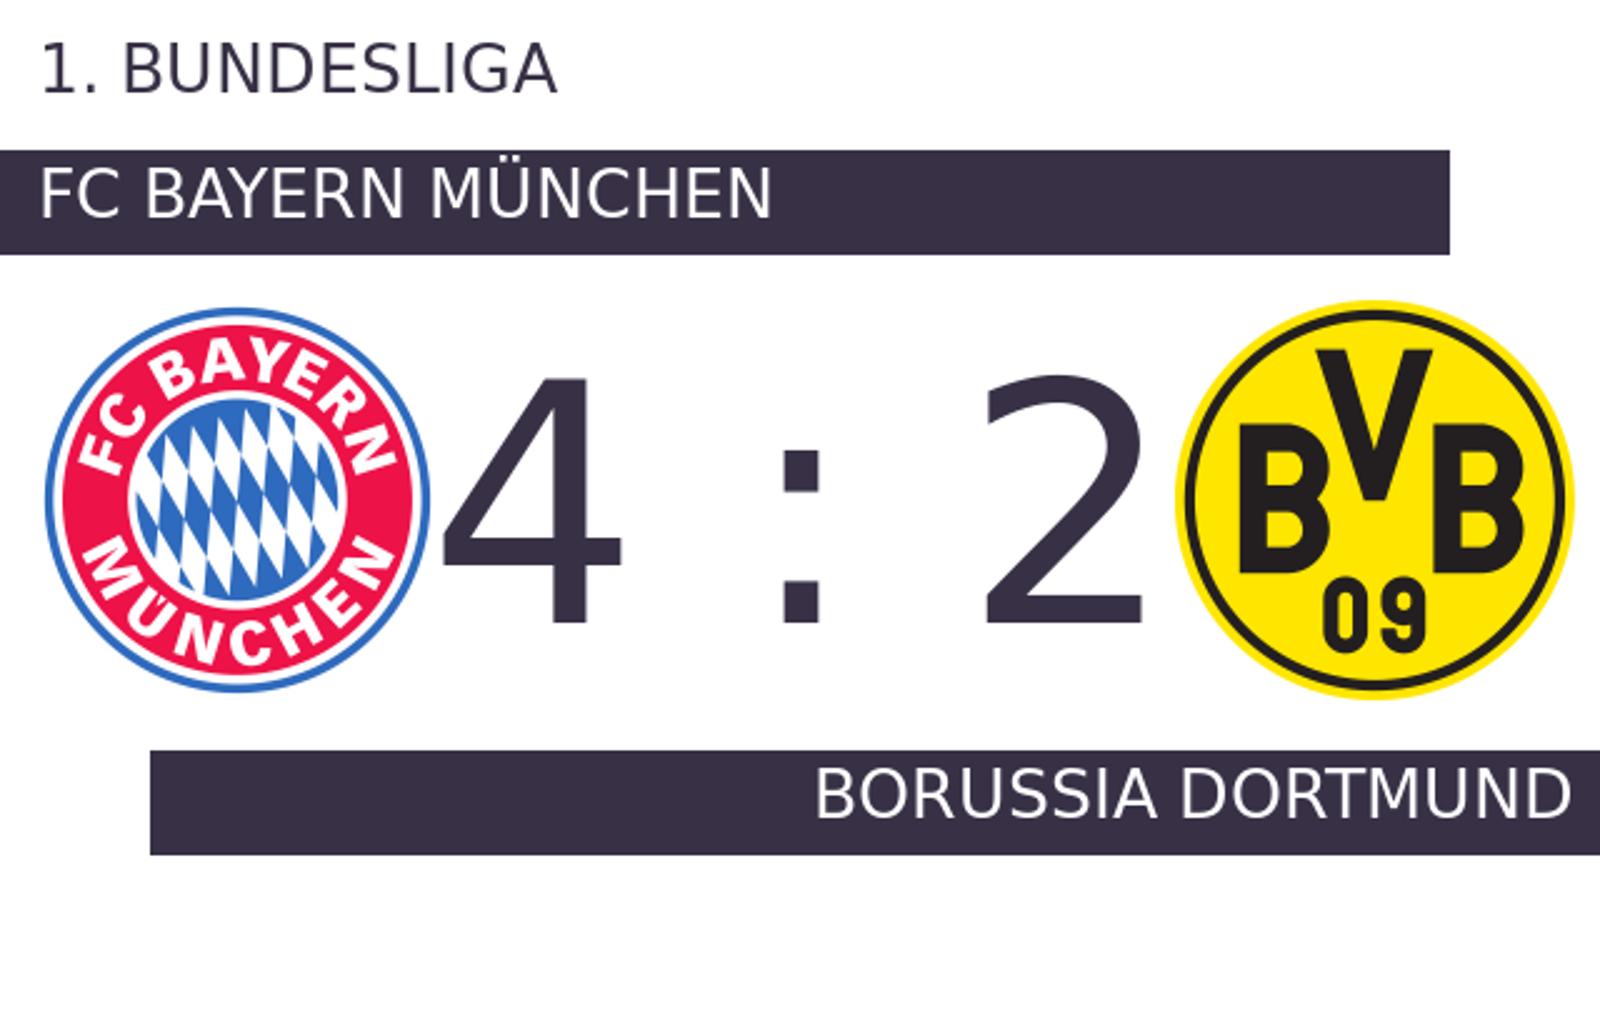 FC Bayern München - Borussia Dortmund - Dortmund verliert Spitzenspiel bei Bayern München